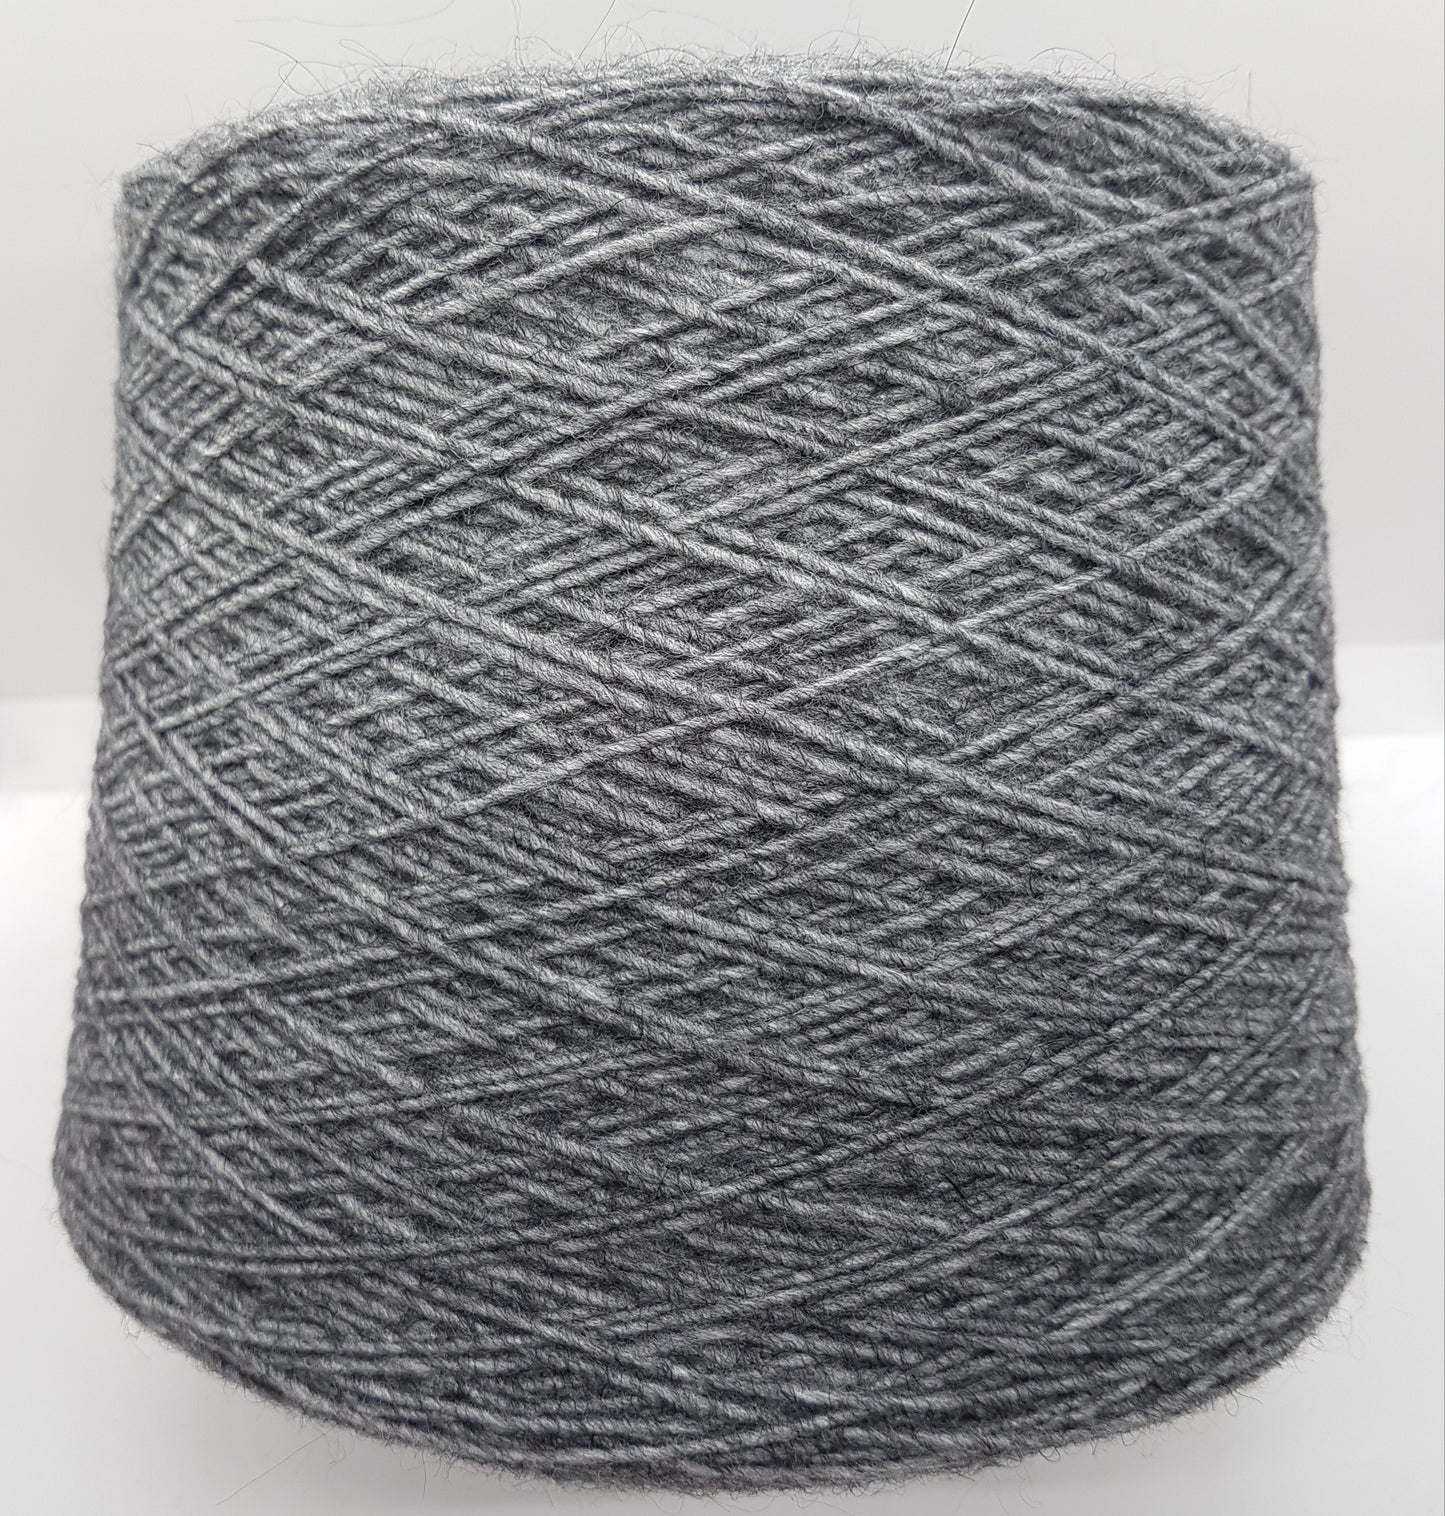 100g Vierge en laine vierge Couleur gris gris et gris-vio gris-viola en laine vierge N.187